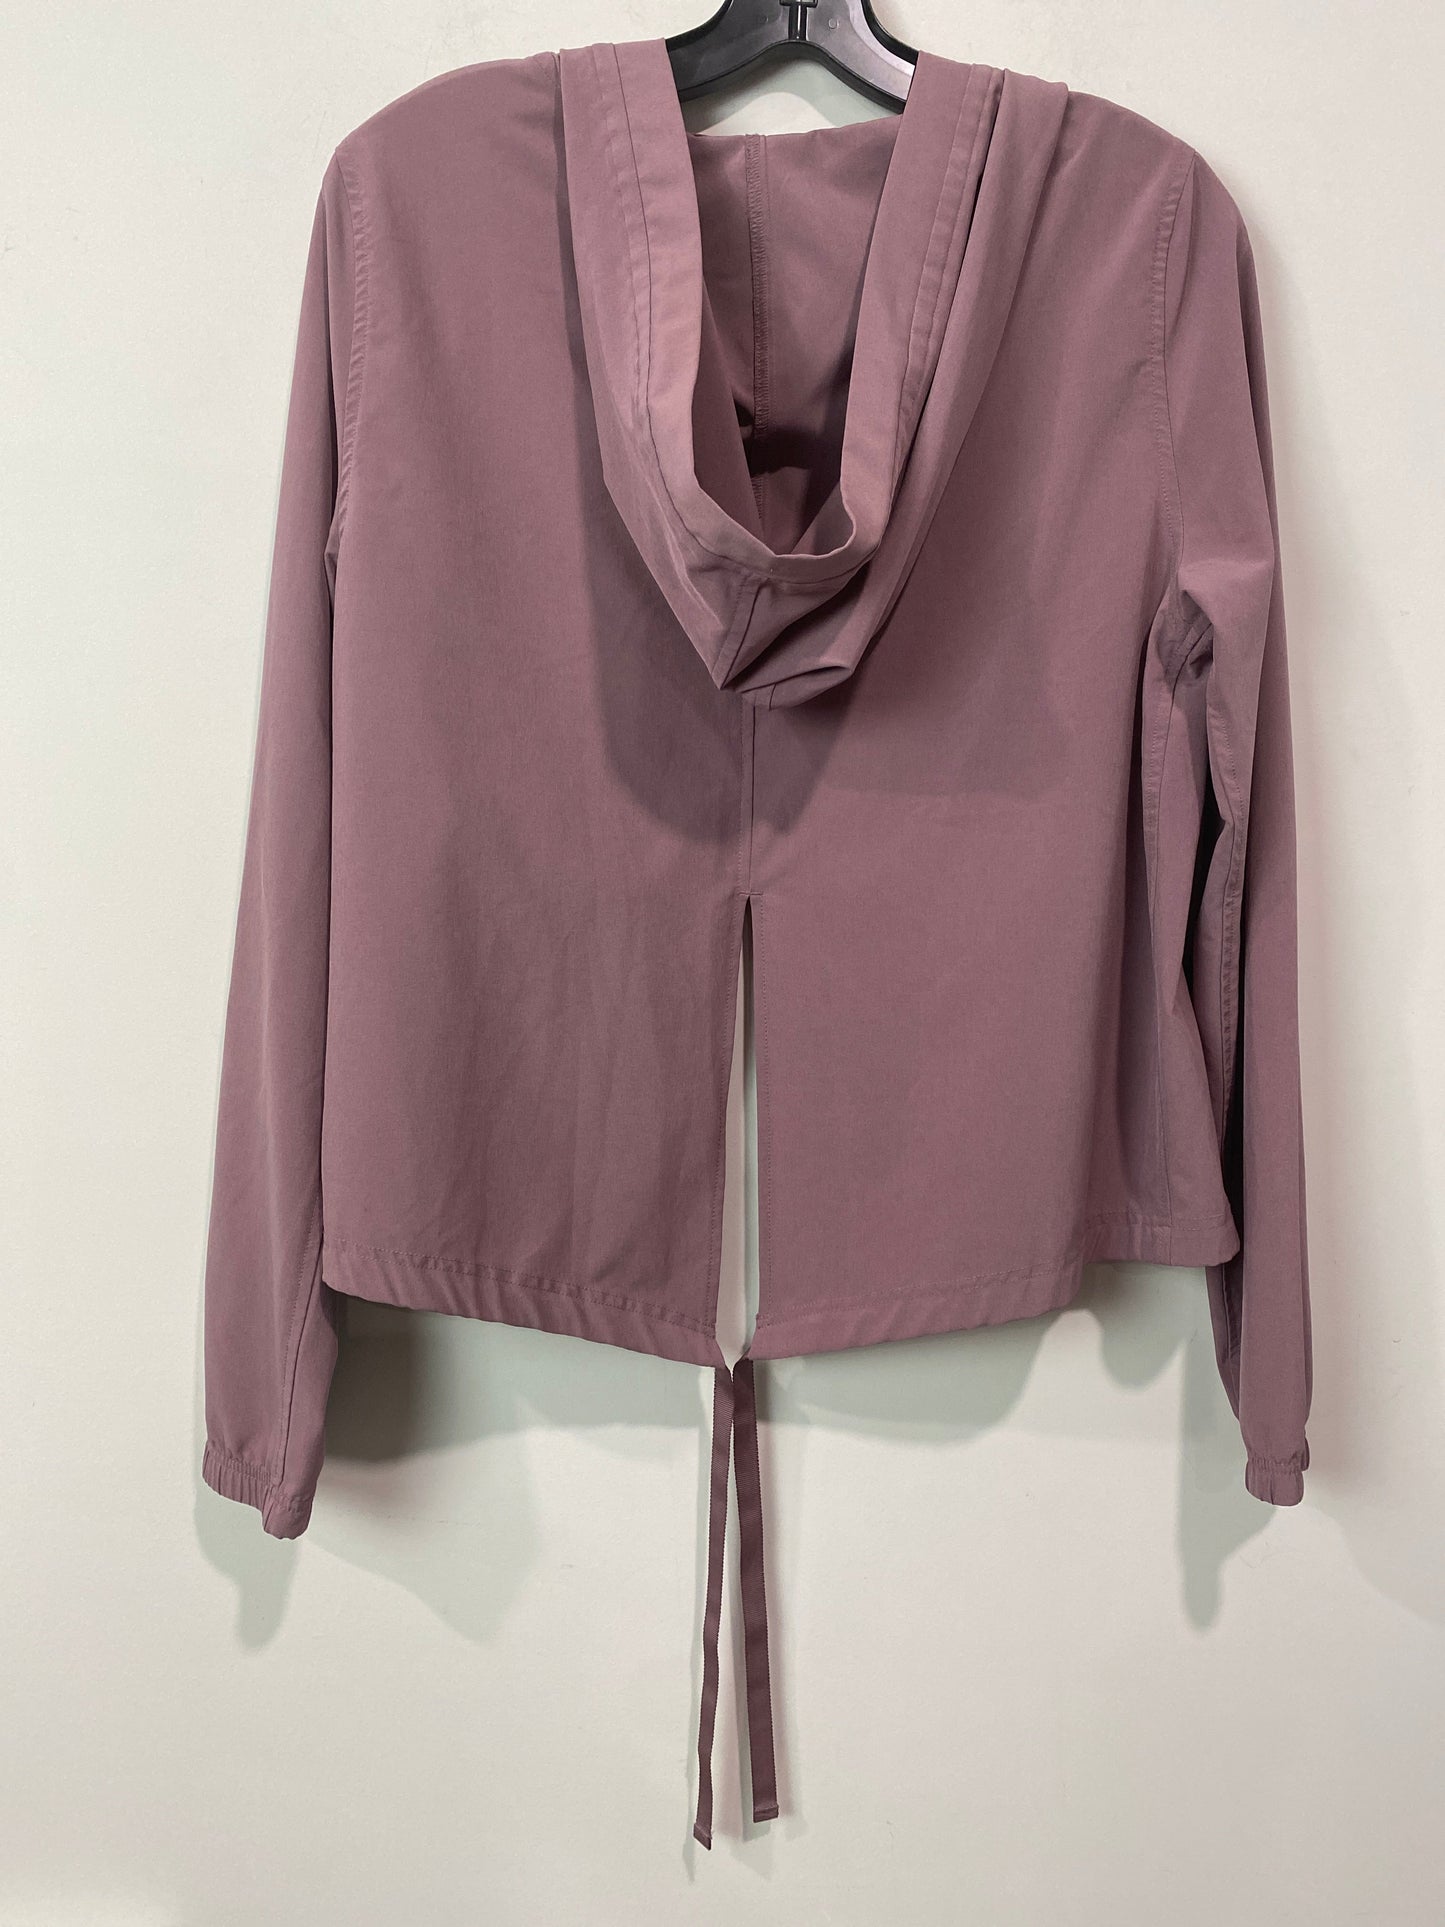 Purple Athletic Jacket Victorias Secret, Size Xs